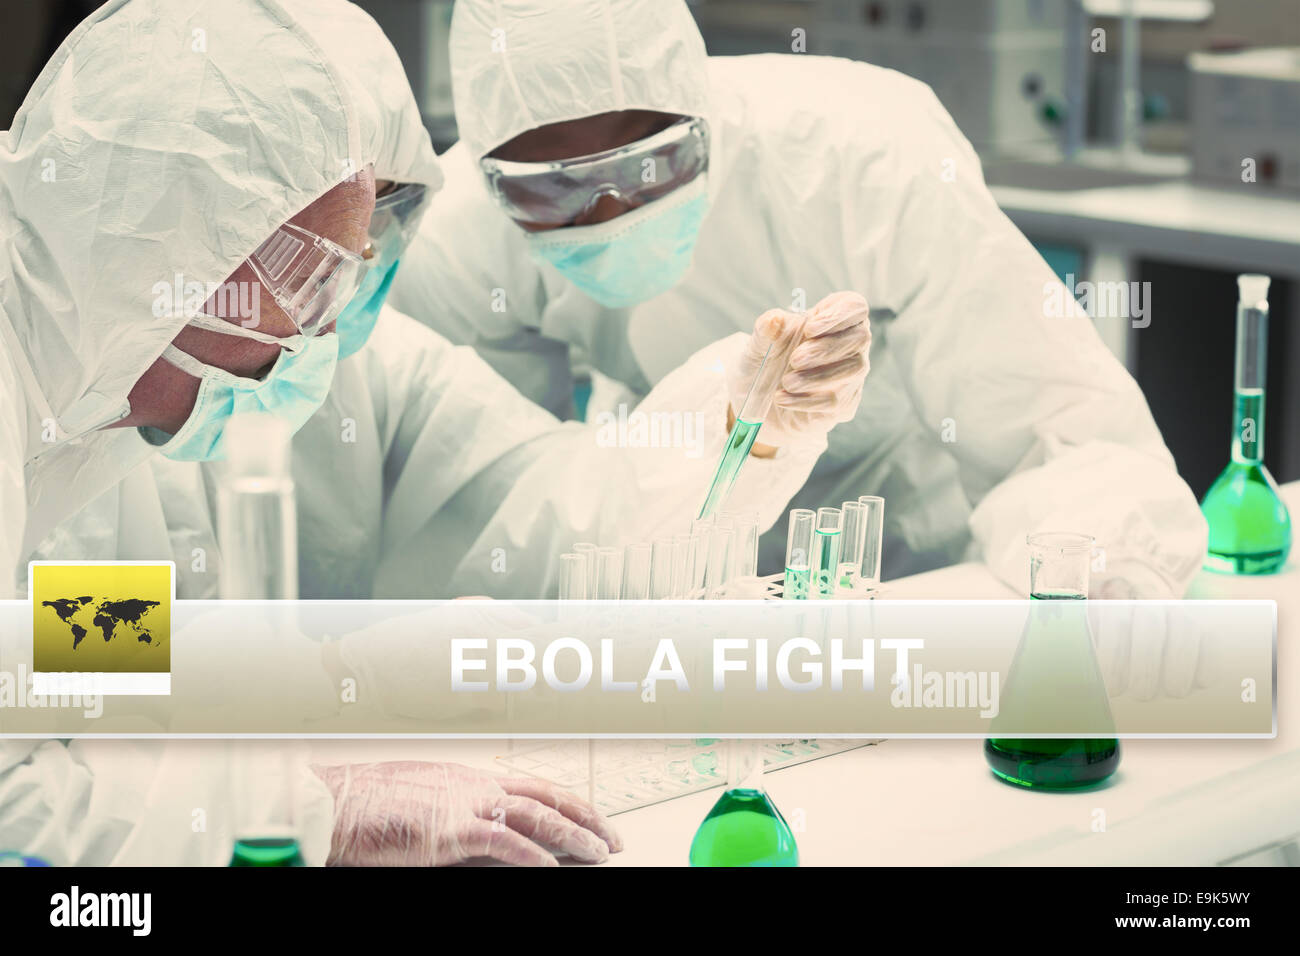 Ebola-News-Flash mit medizinischen Bildern Stockfoto